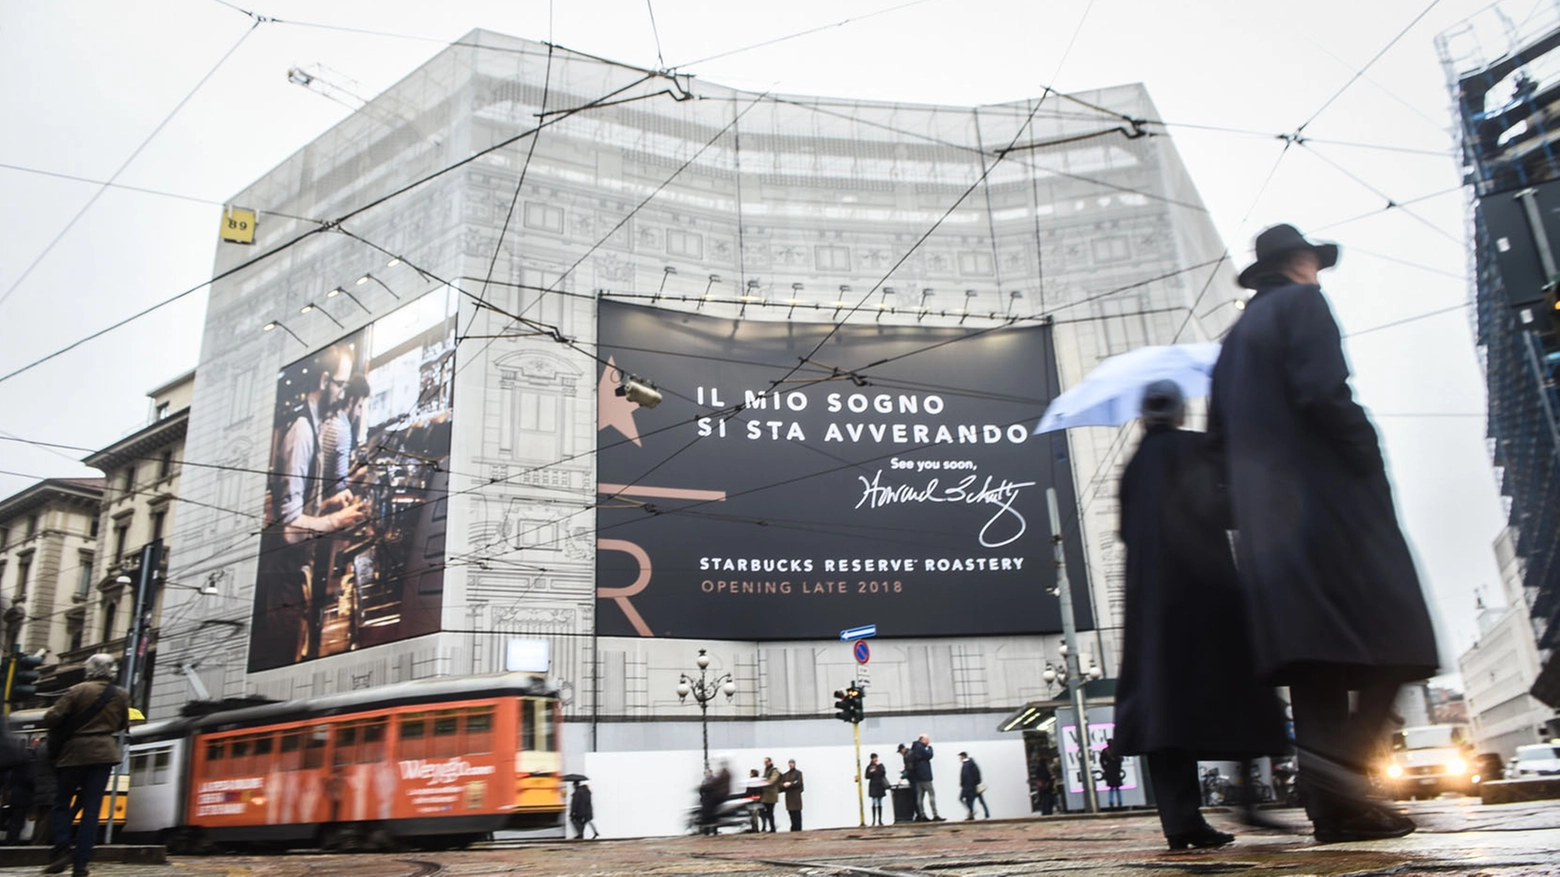 Il cartellone annuncia l'apertura dello store Starbucks a Milano (La Presse)